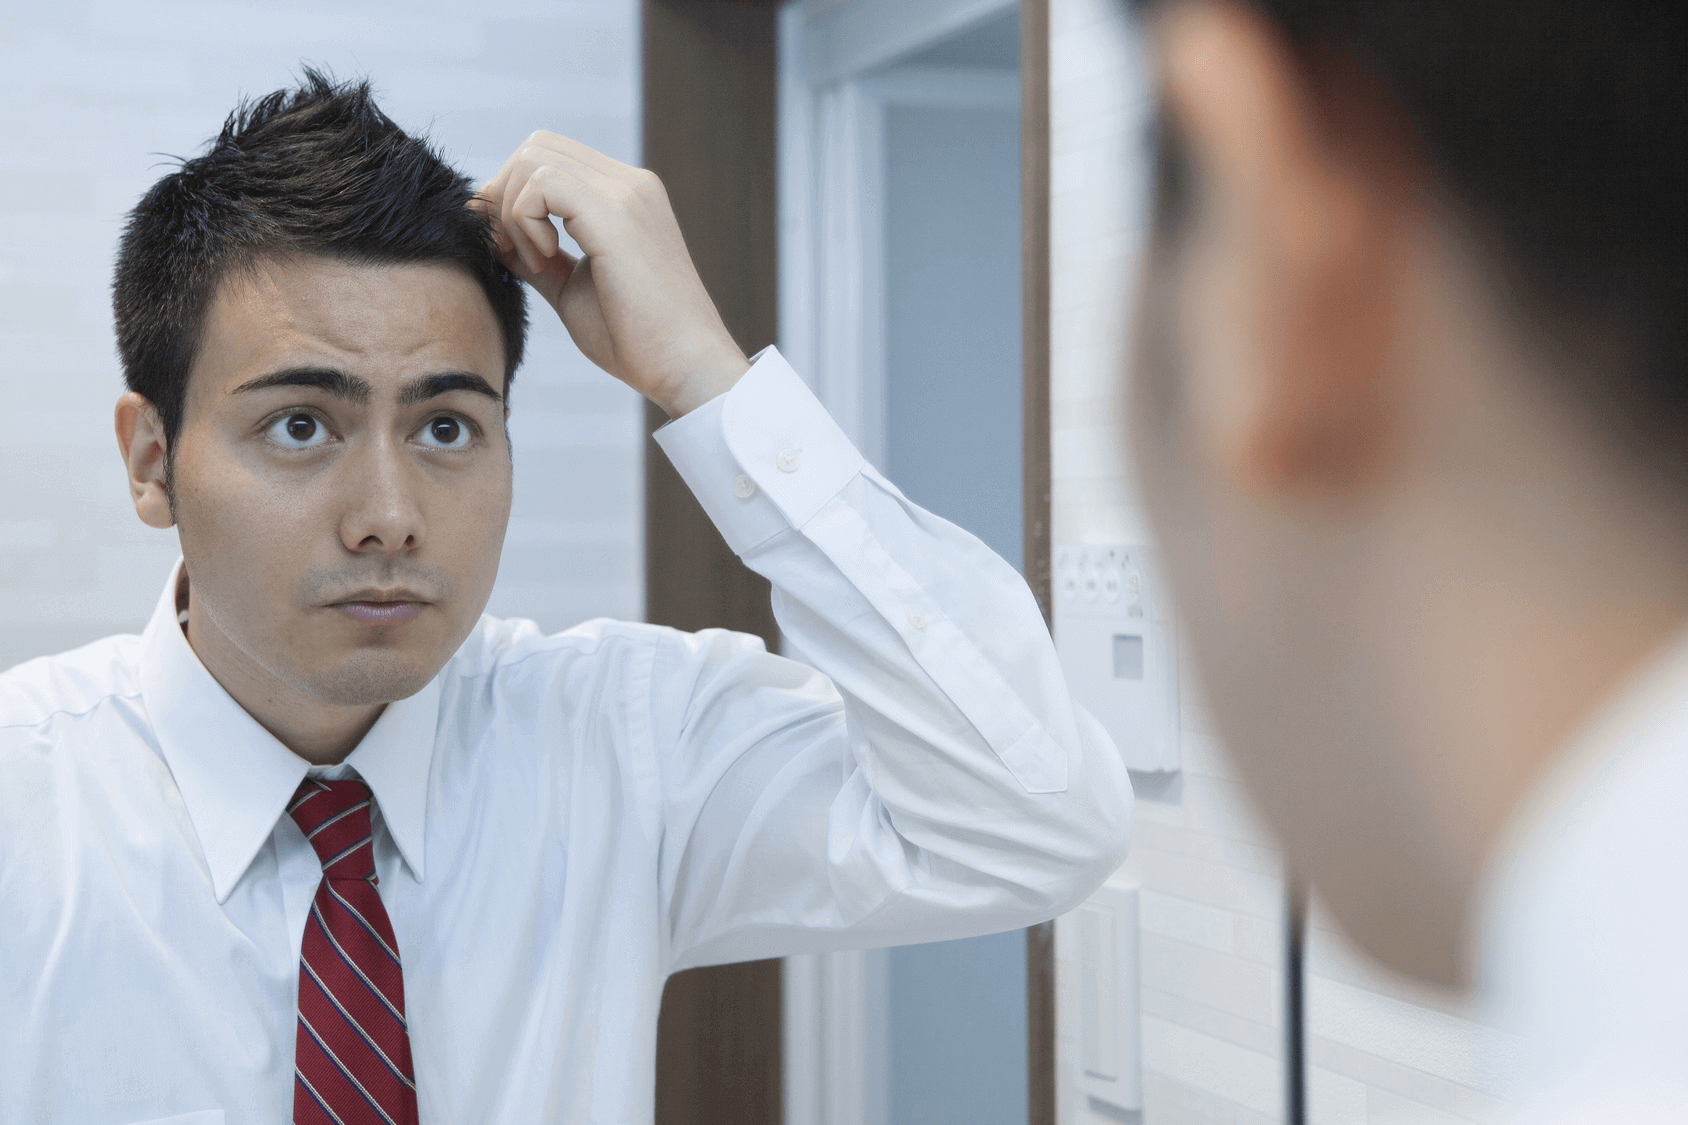 びまん性脱毛症は男性でも発症する？